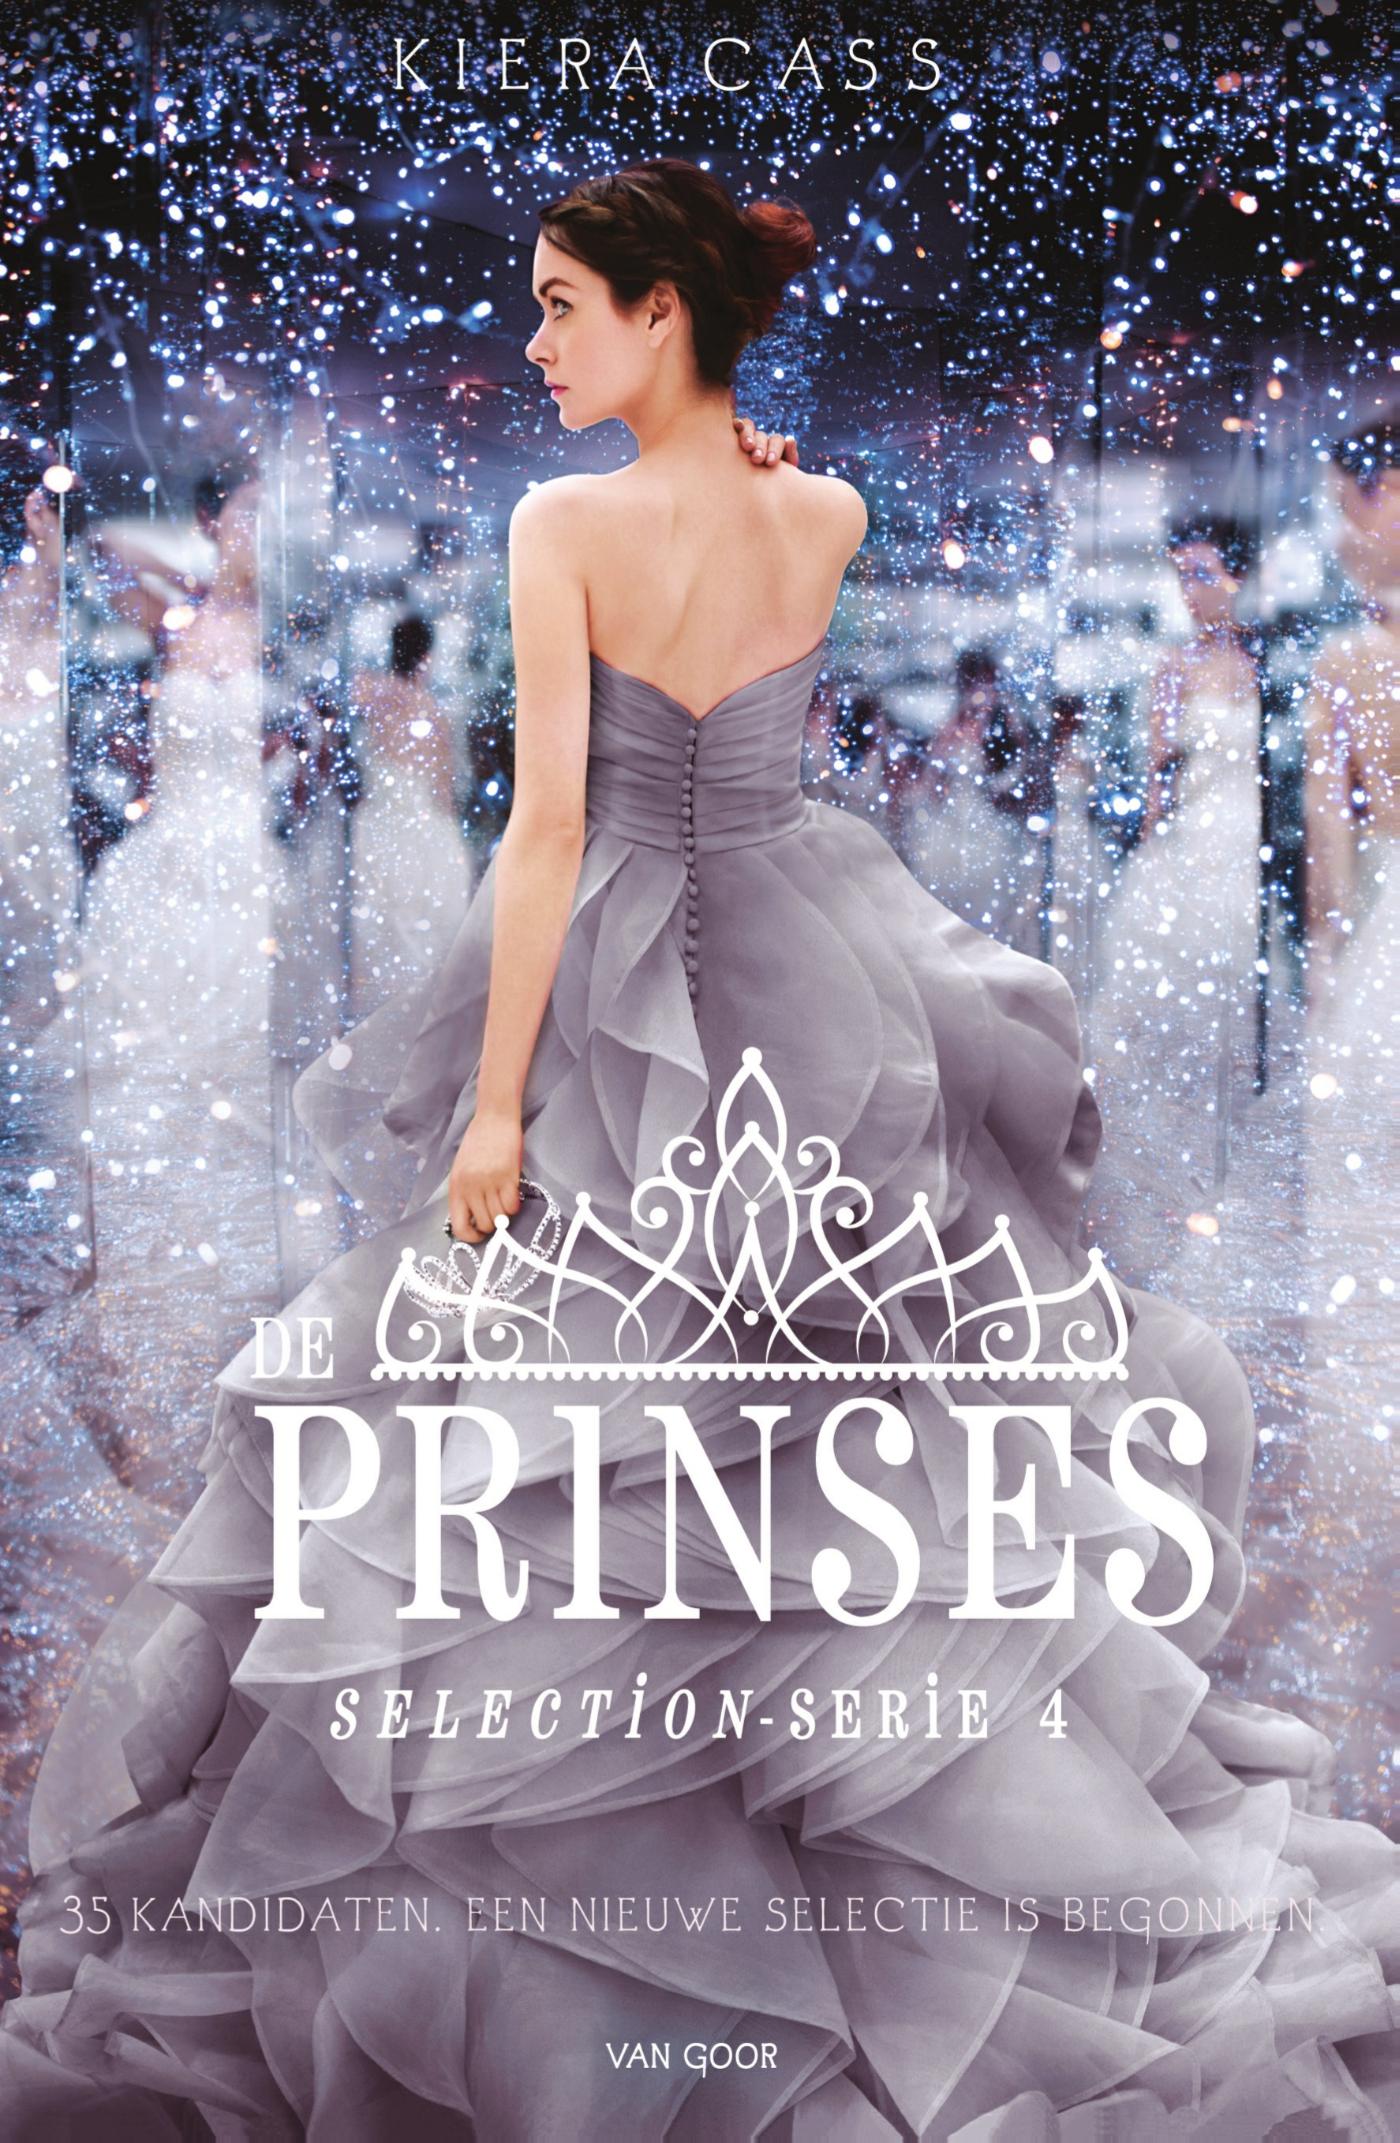 De prinses (Ebook)